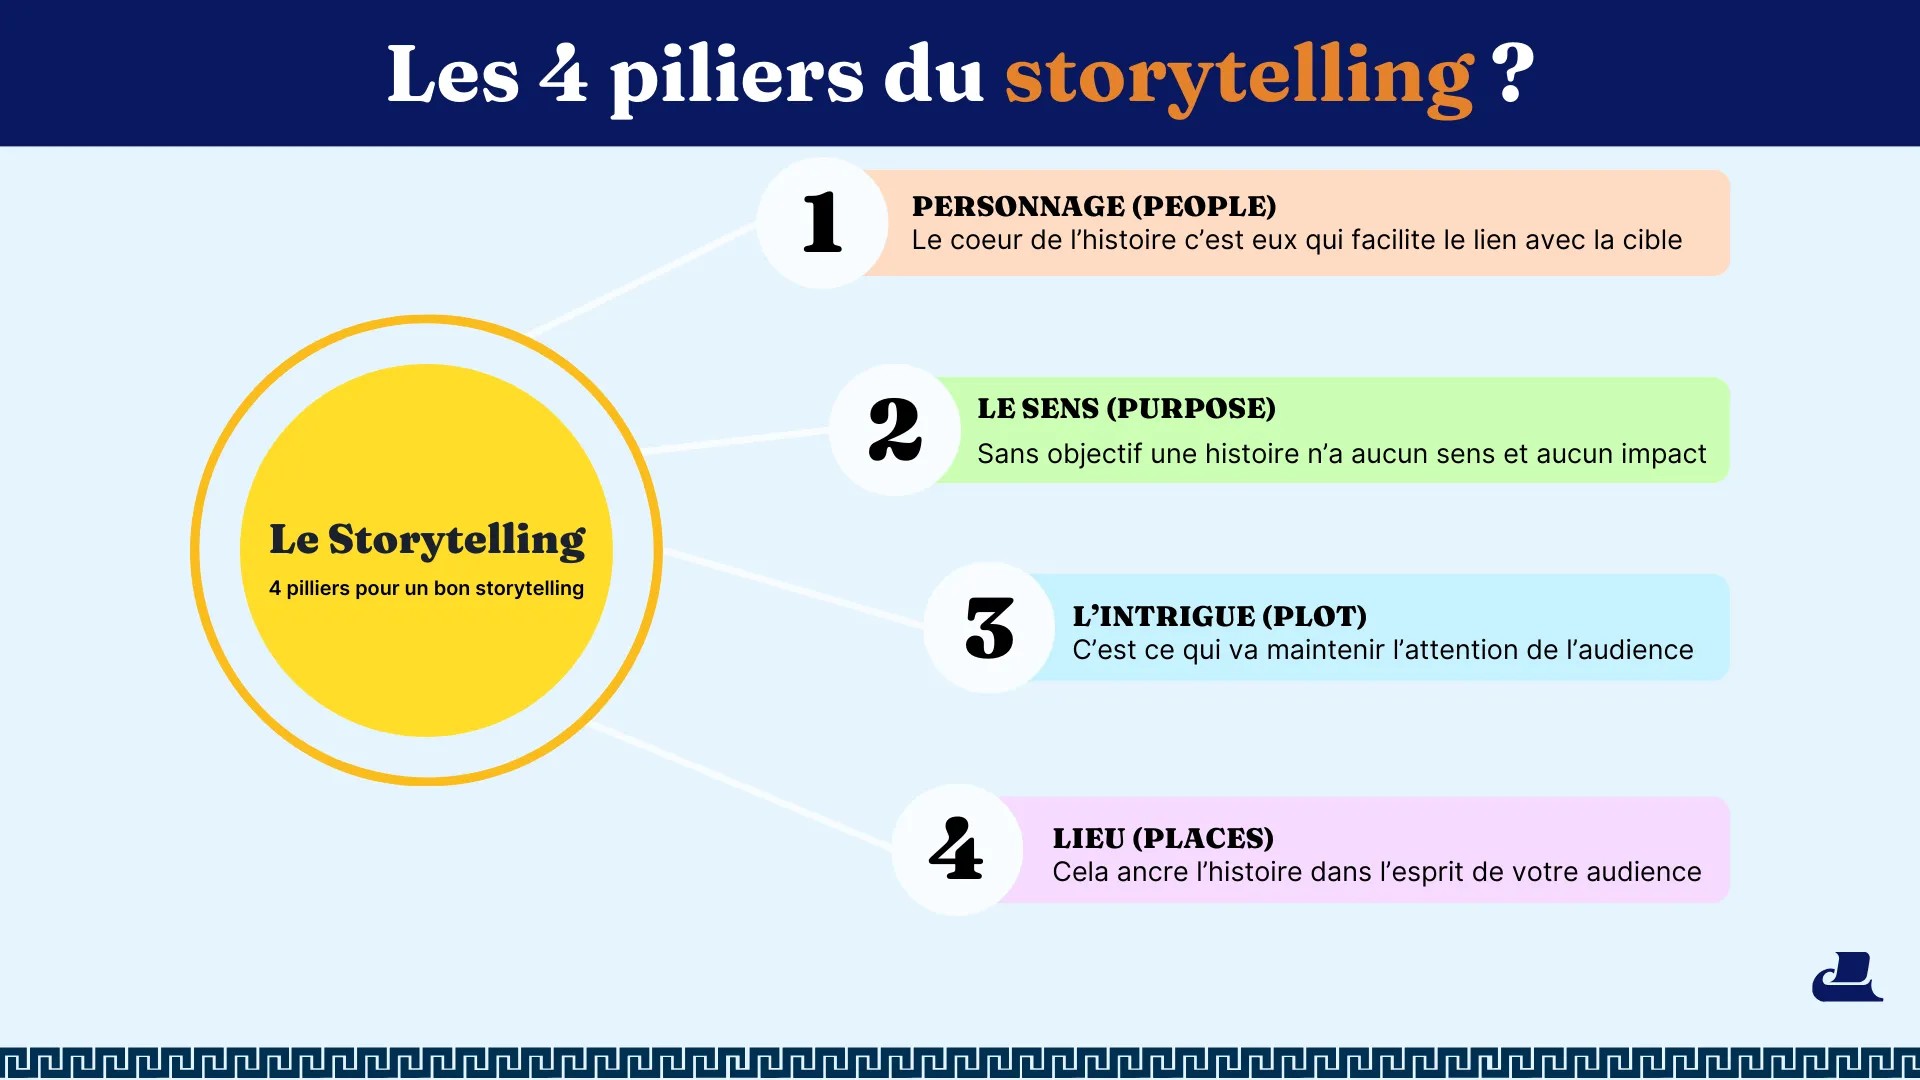 Les 4 piliers du storytelling